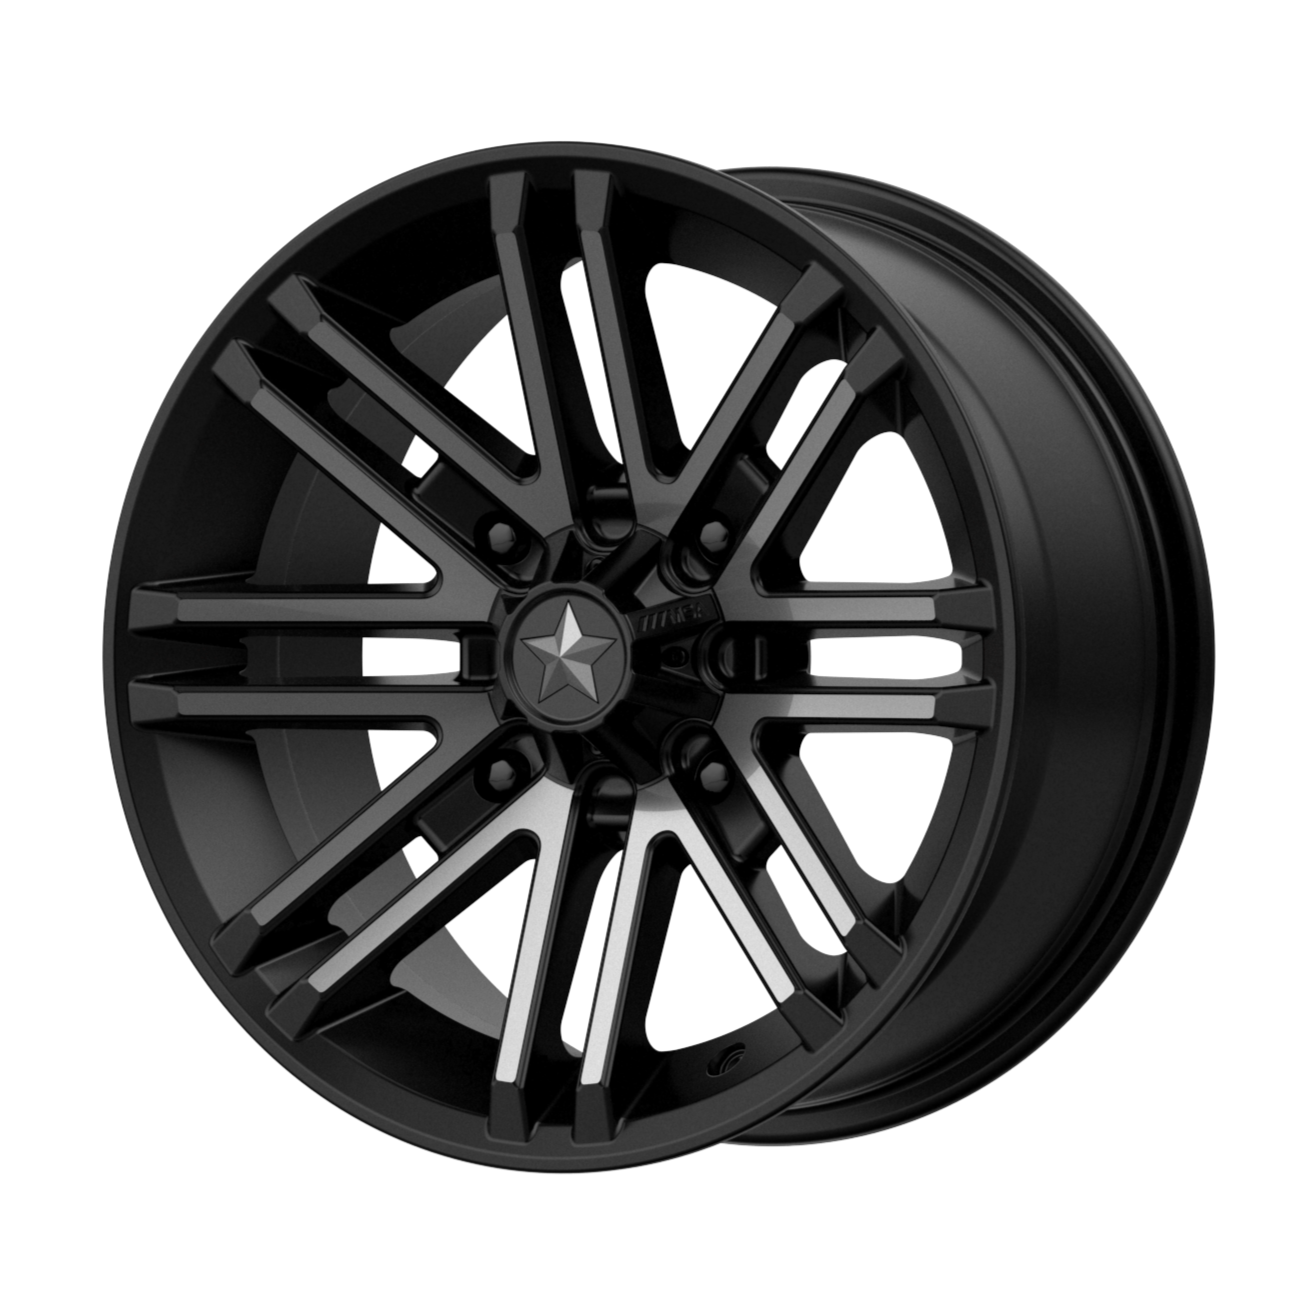 MSA Offroad Wheels M40 ROGUE 14x7 10 4x110/4x110 Satin Black Titanium Tint